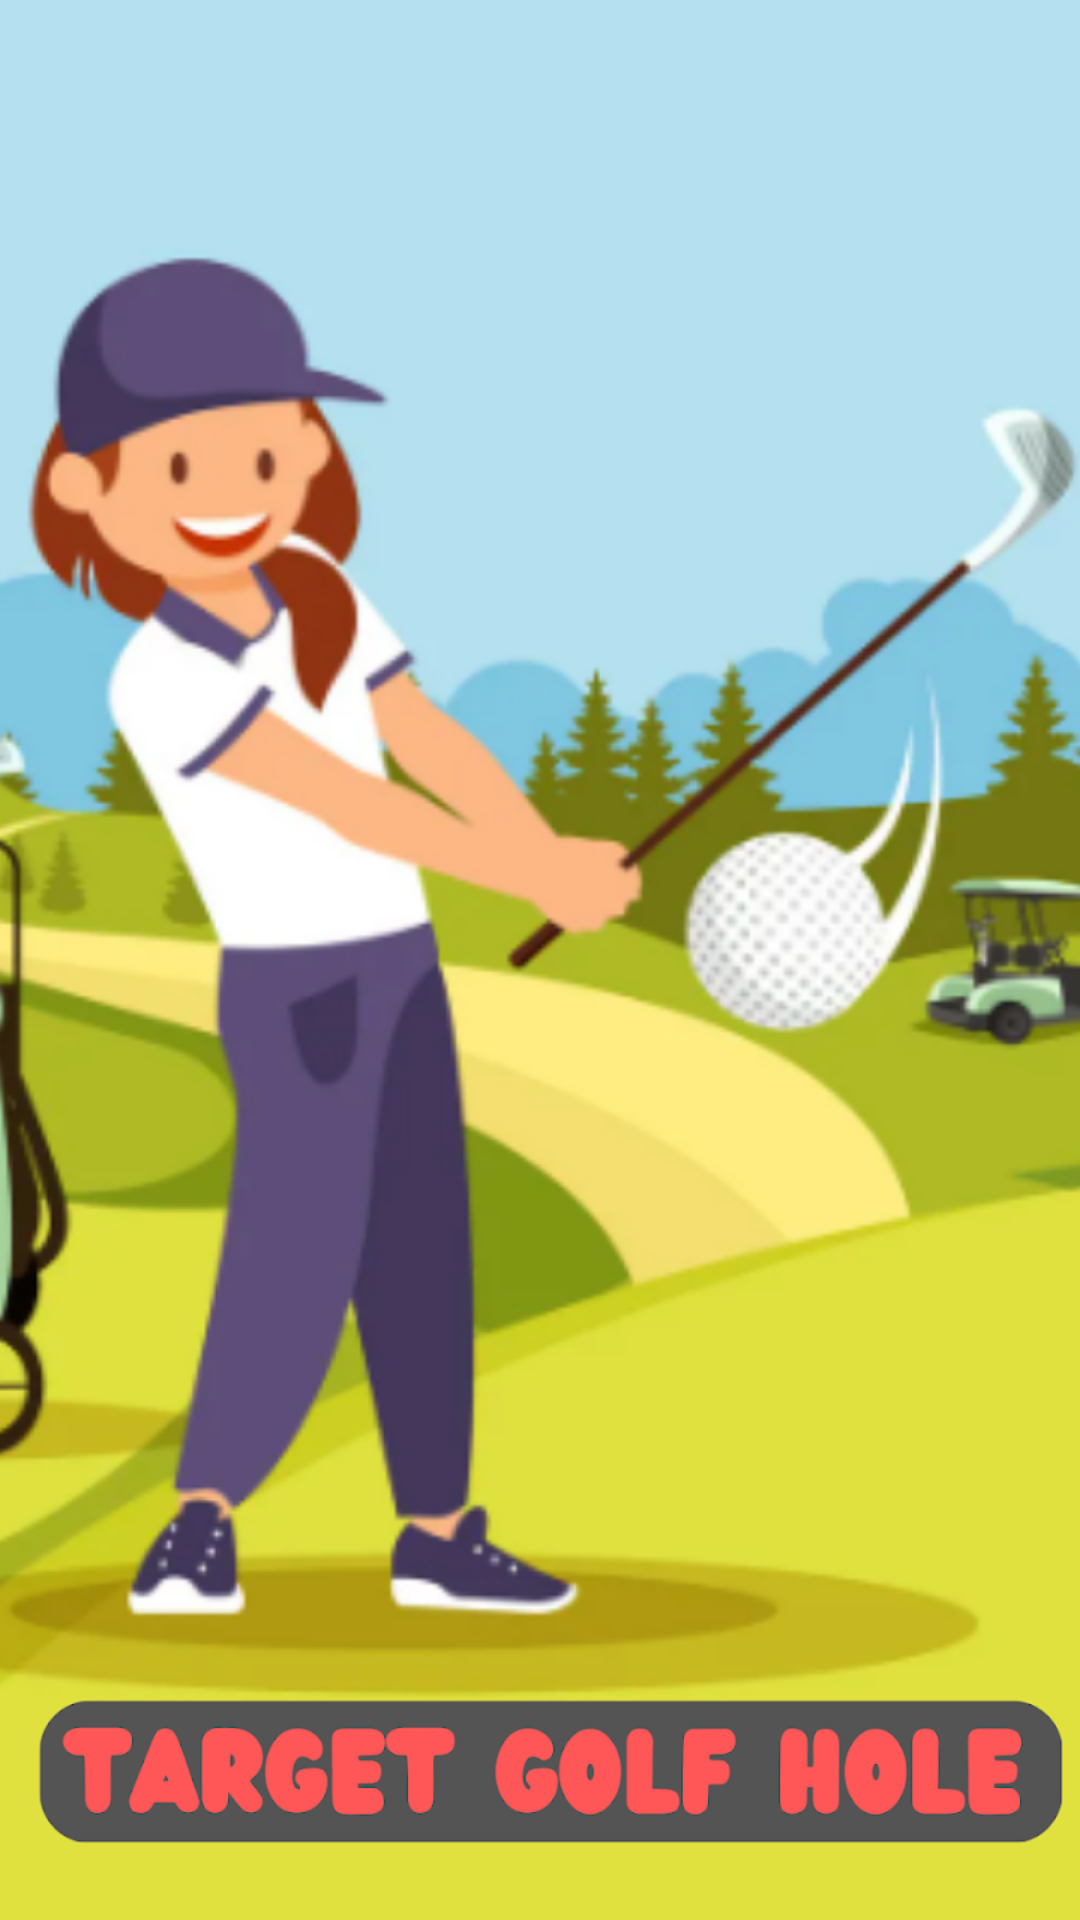 Mini Golf Swing-Putt Hole 3D